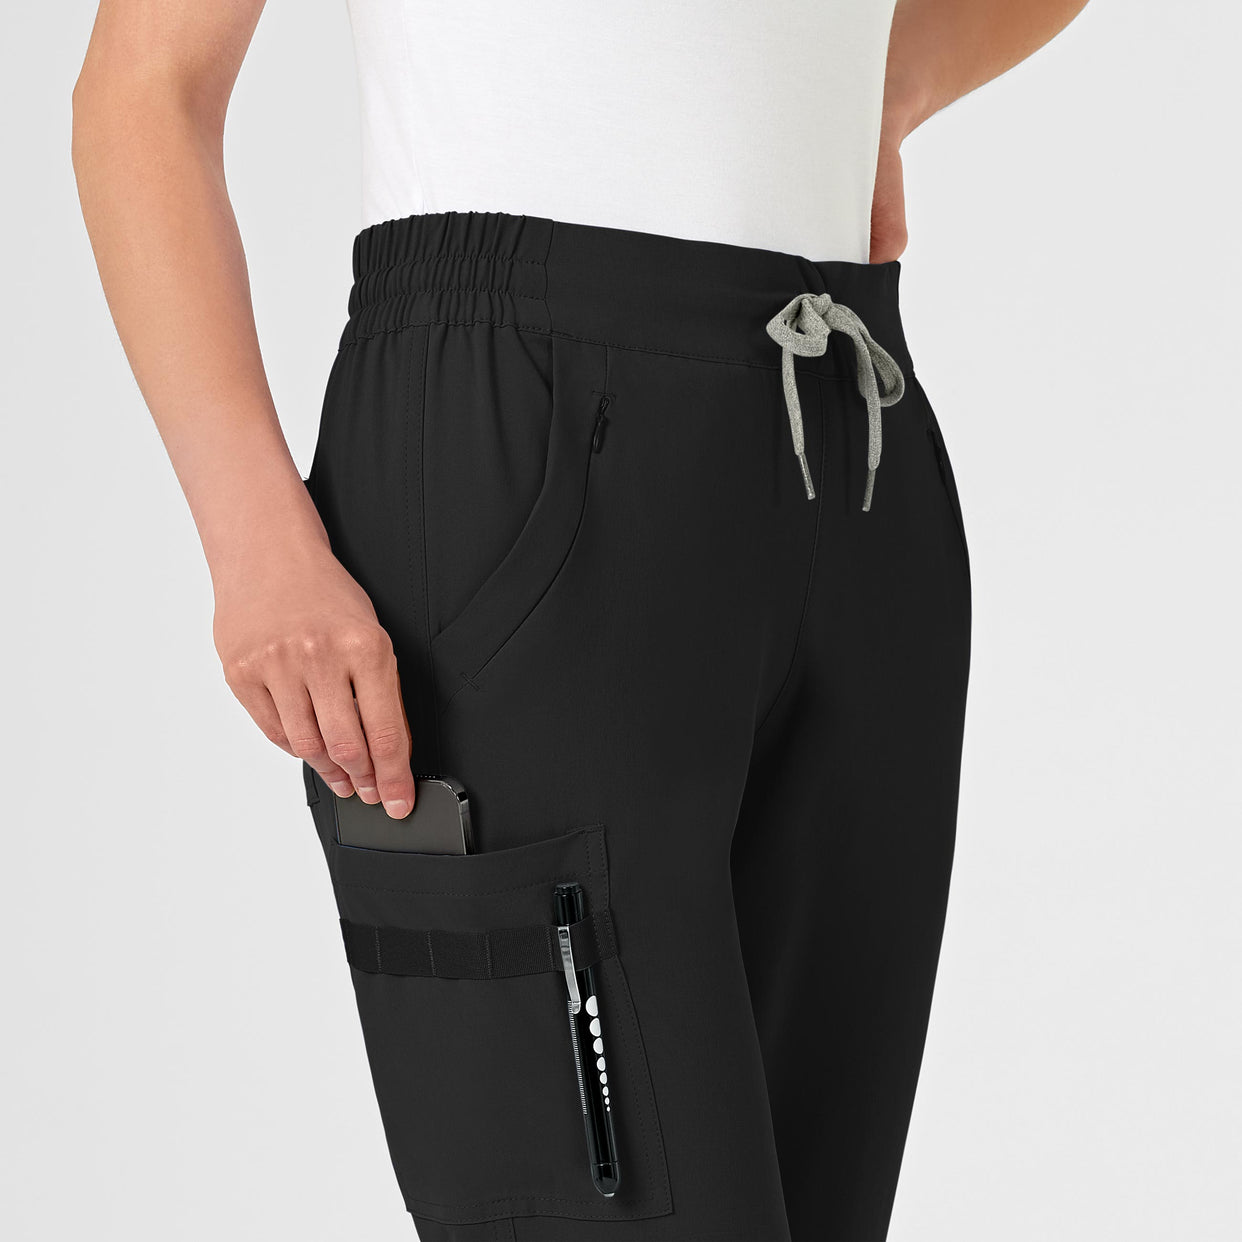 RENEW Women's Jogger Scrub Pant - Black – Wink Scrubs